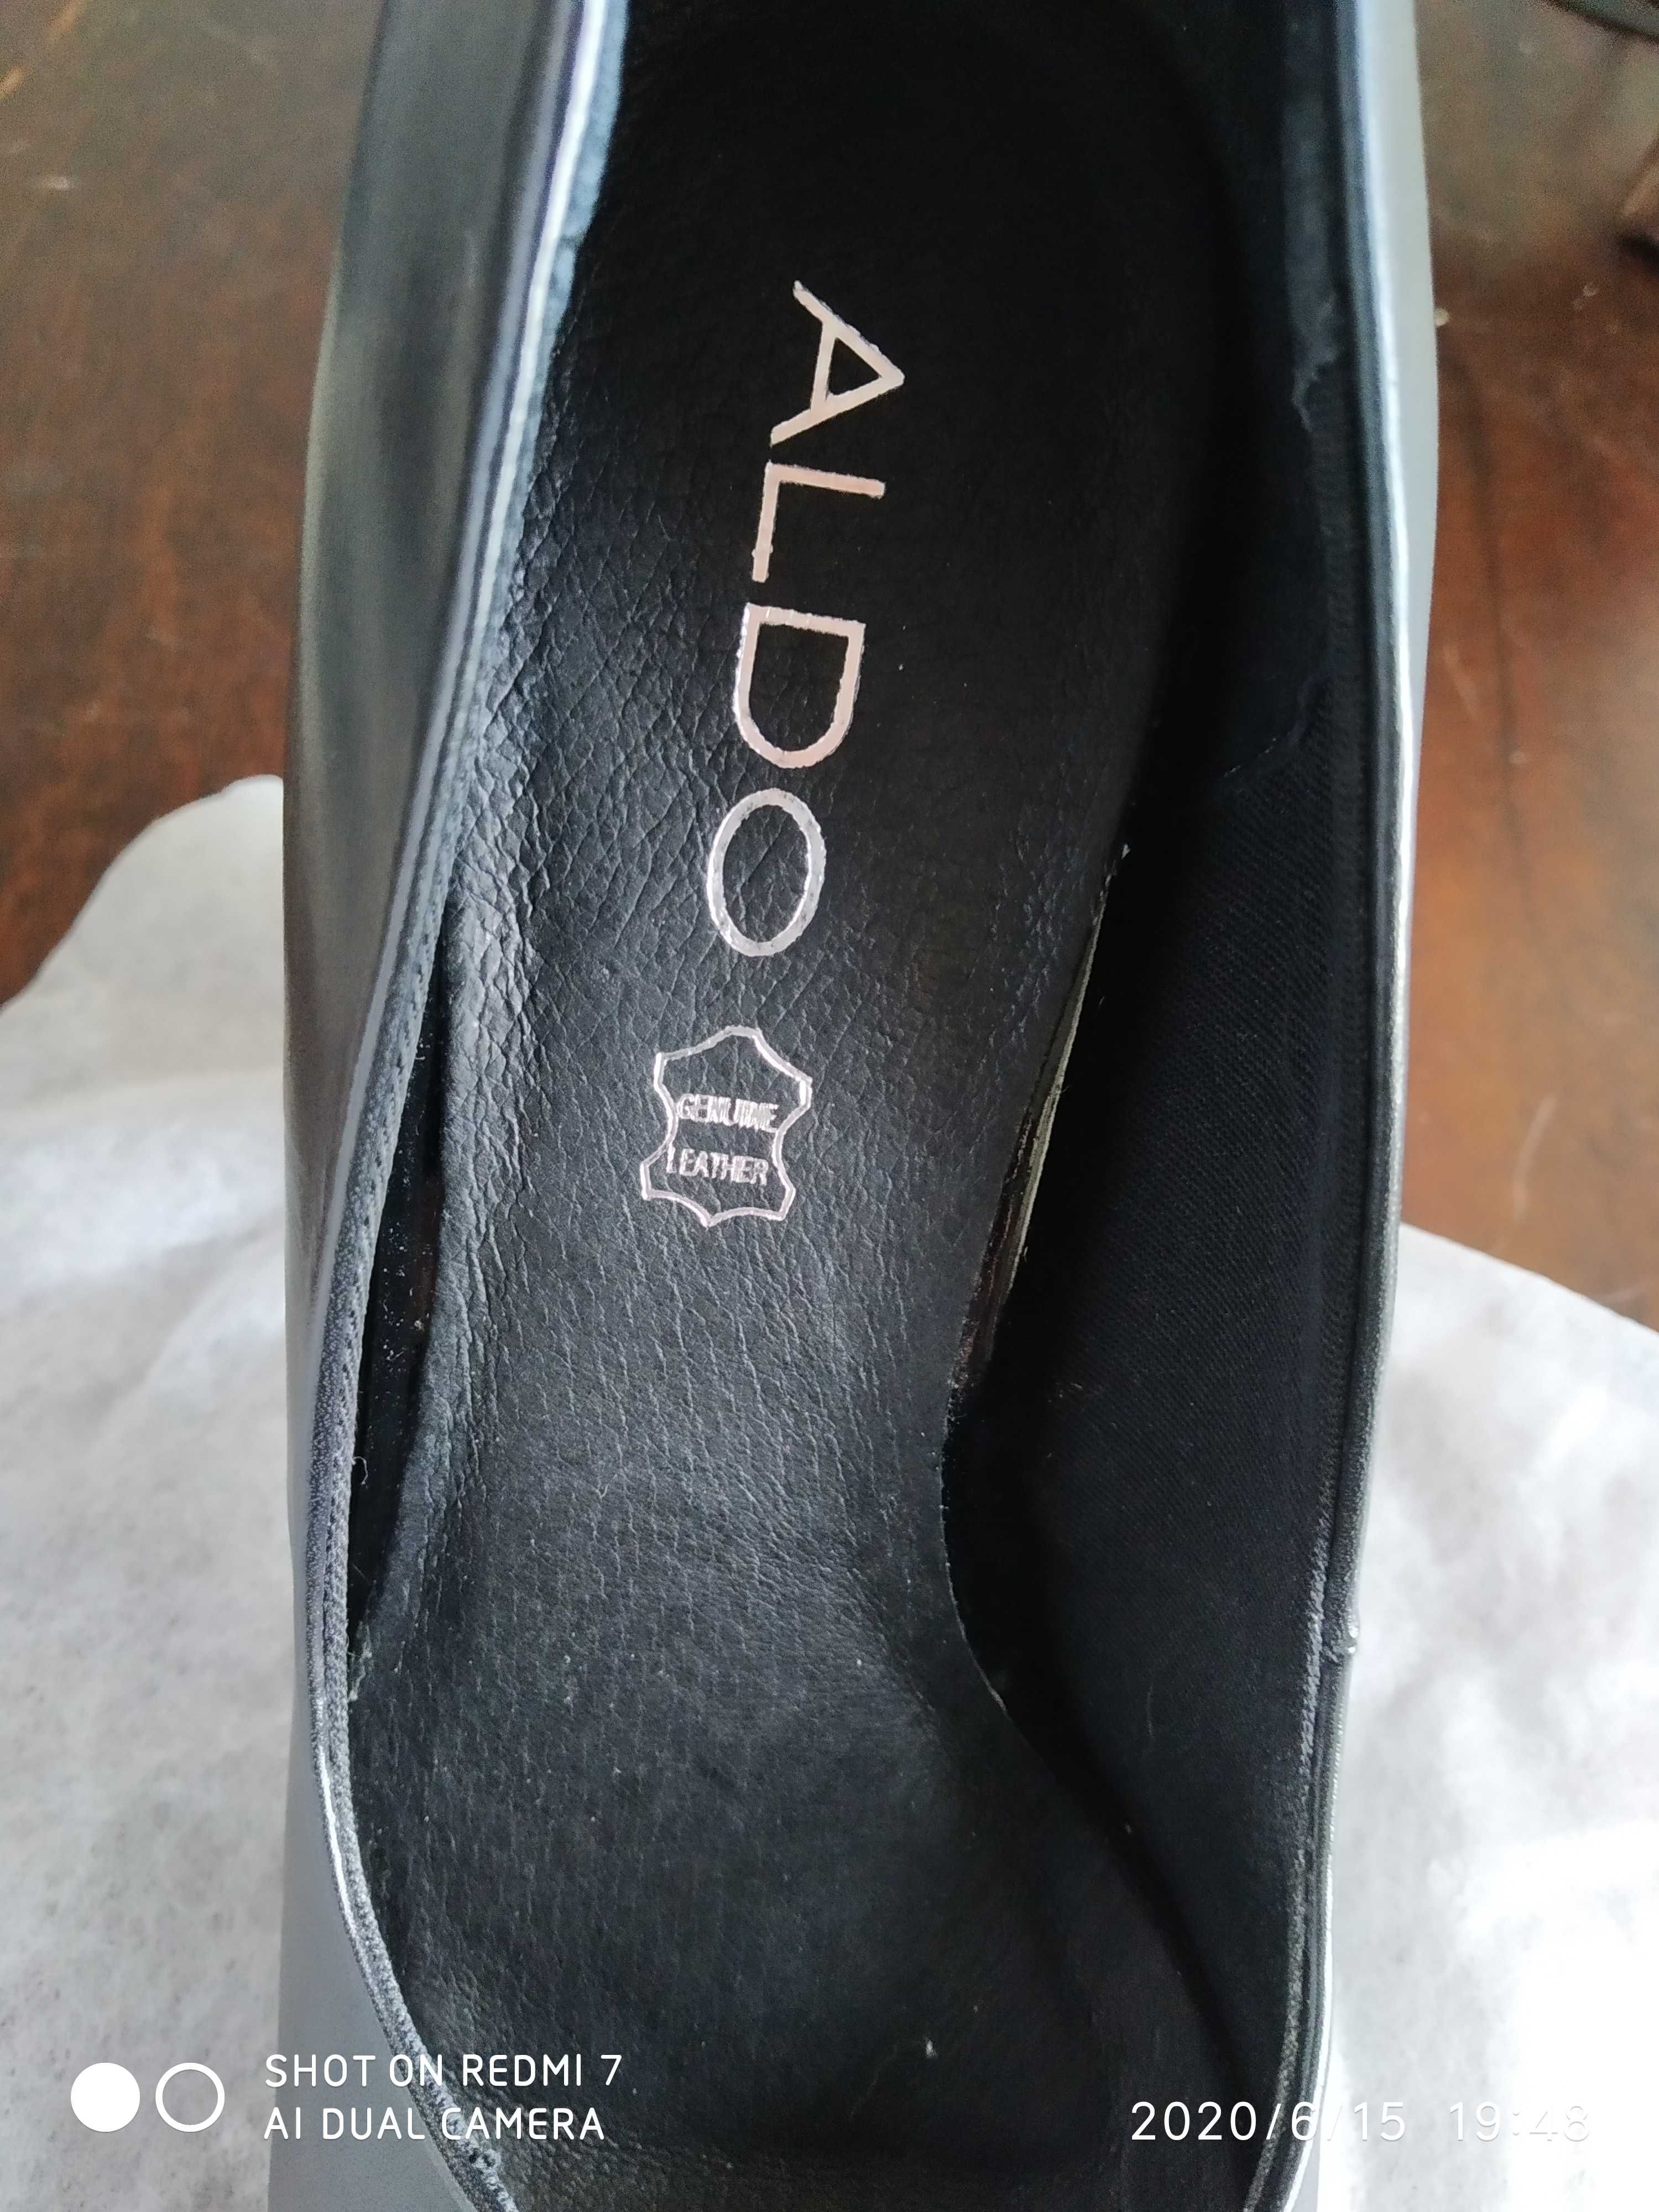 Sapatos ALDO (nunca usados) para o FIM DE ANO ou festa de cerimônia